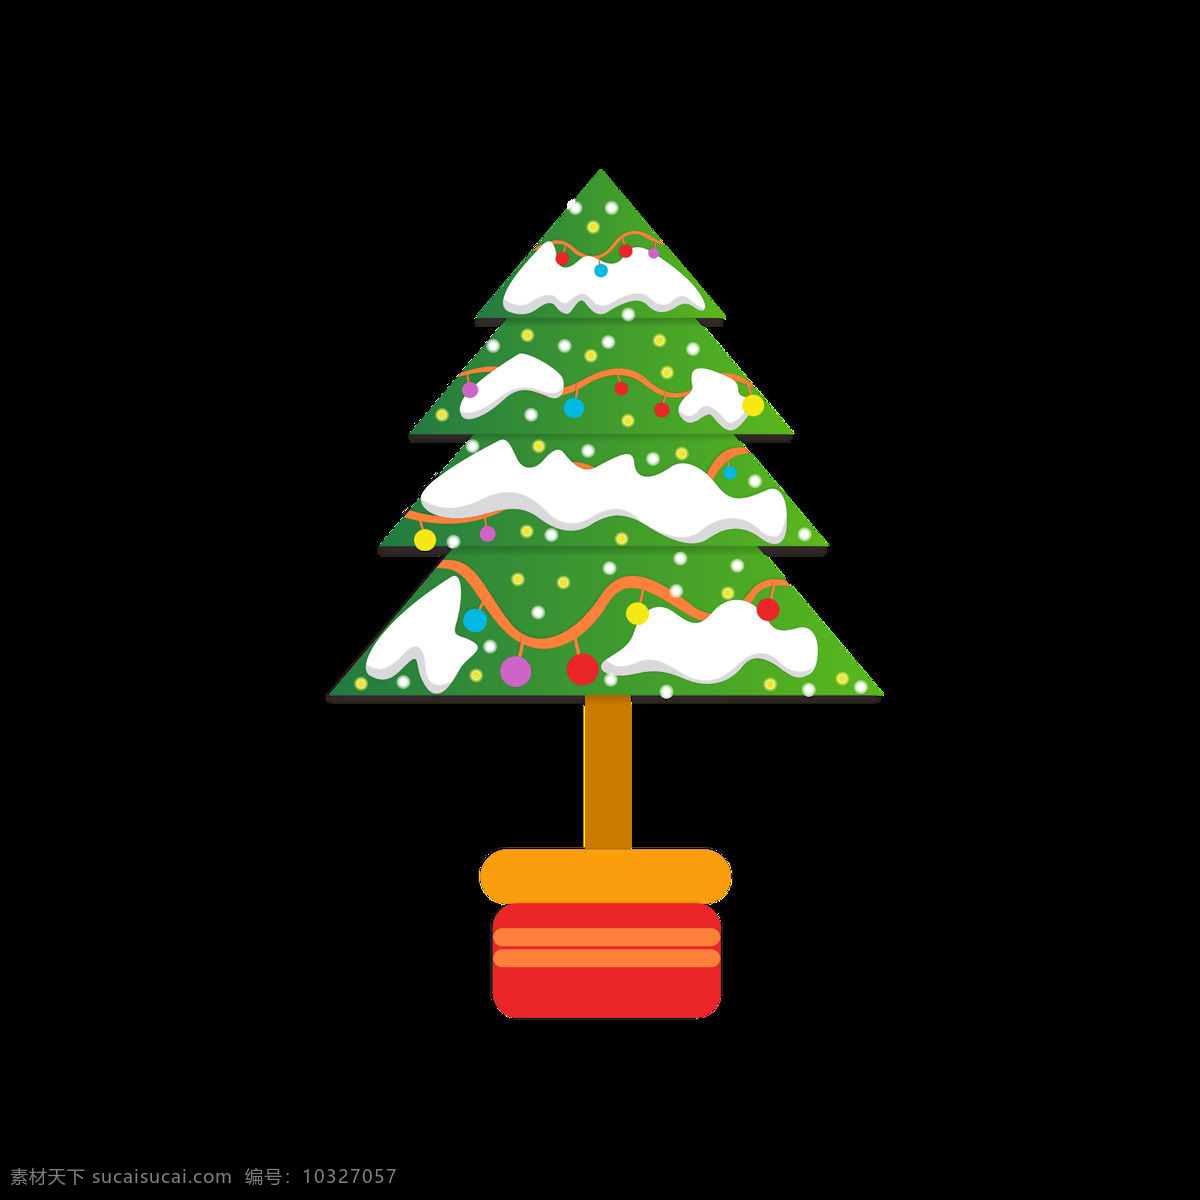 圣诞节 雪 树 元素 卡通 可爱 圣诞树 雪树 卡通可爱 节日 元素设计